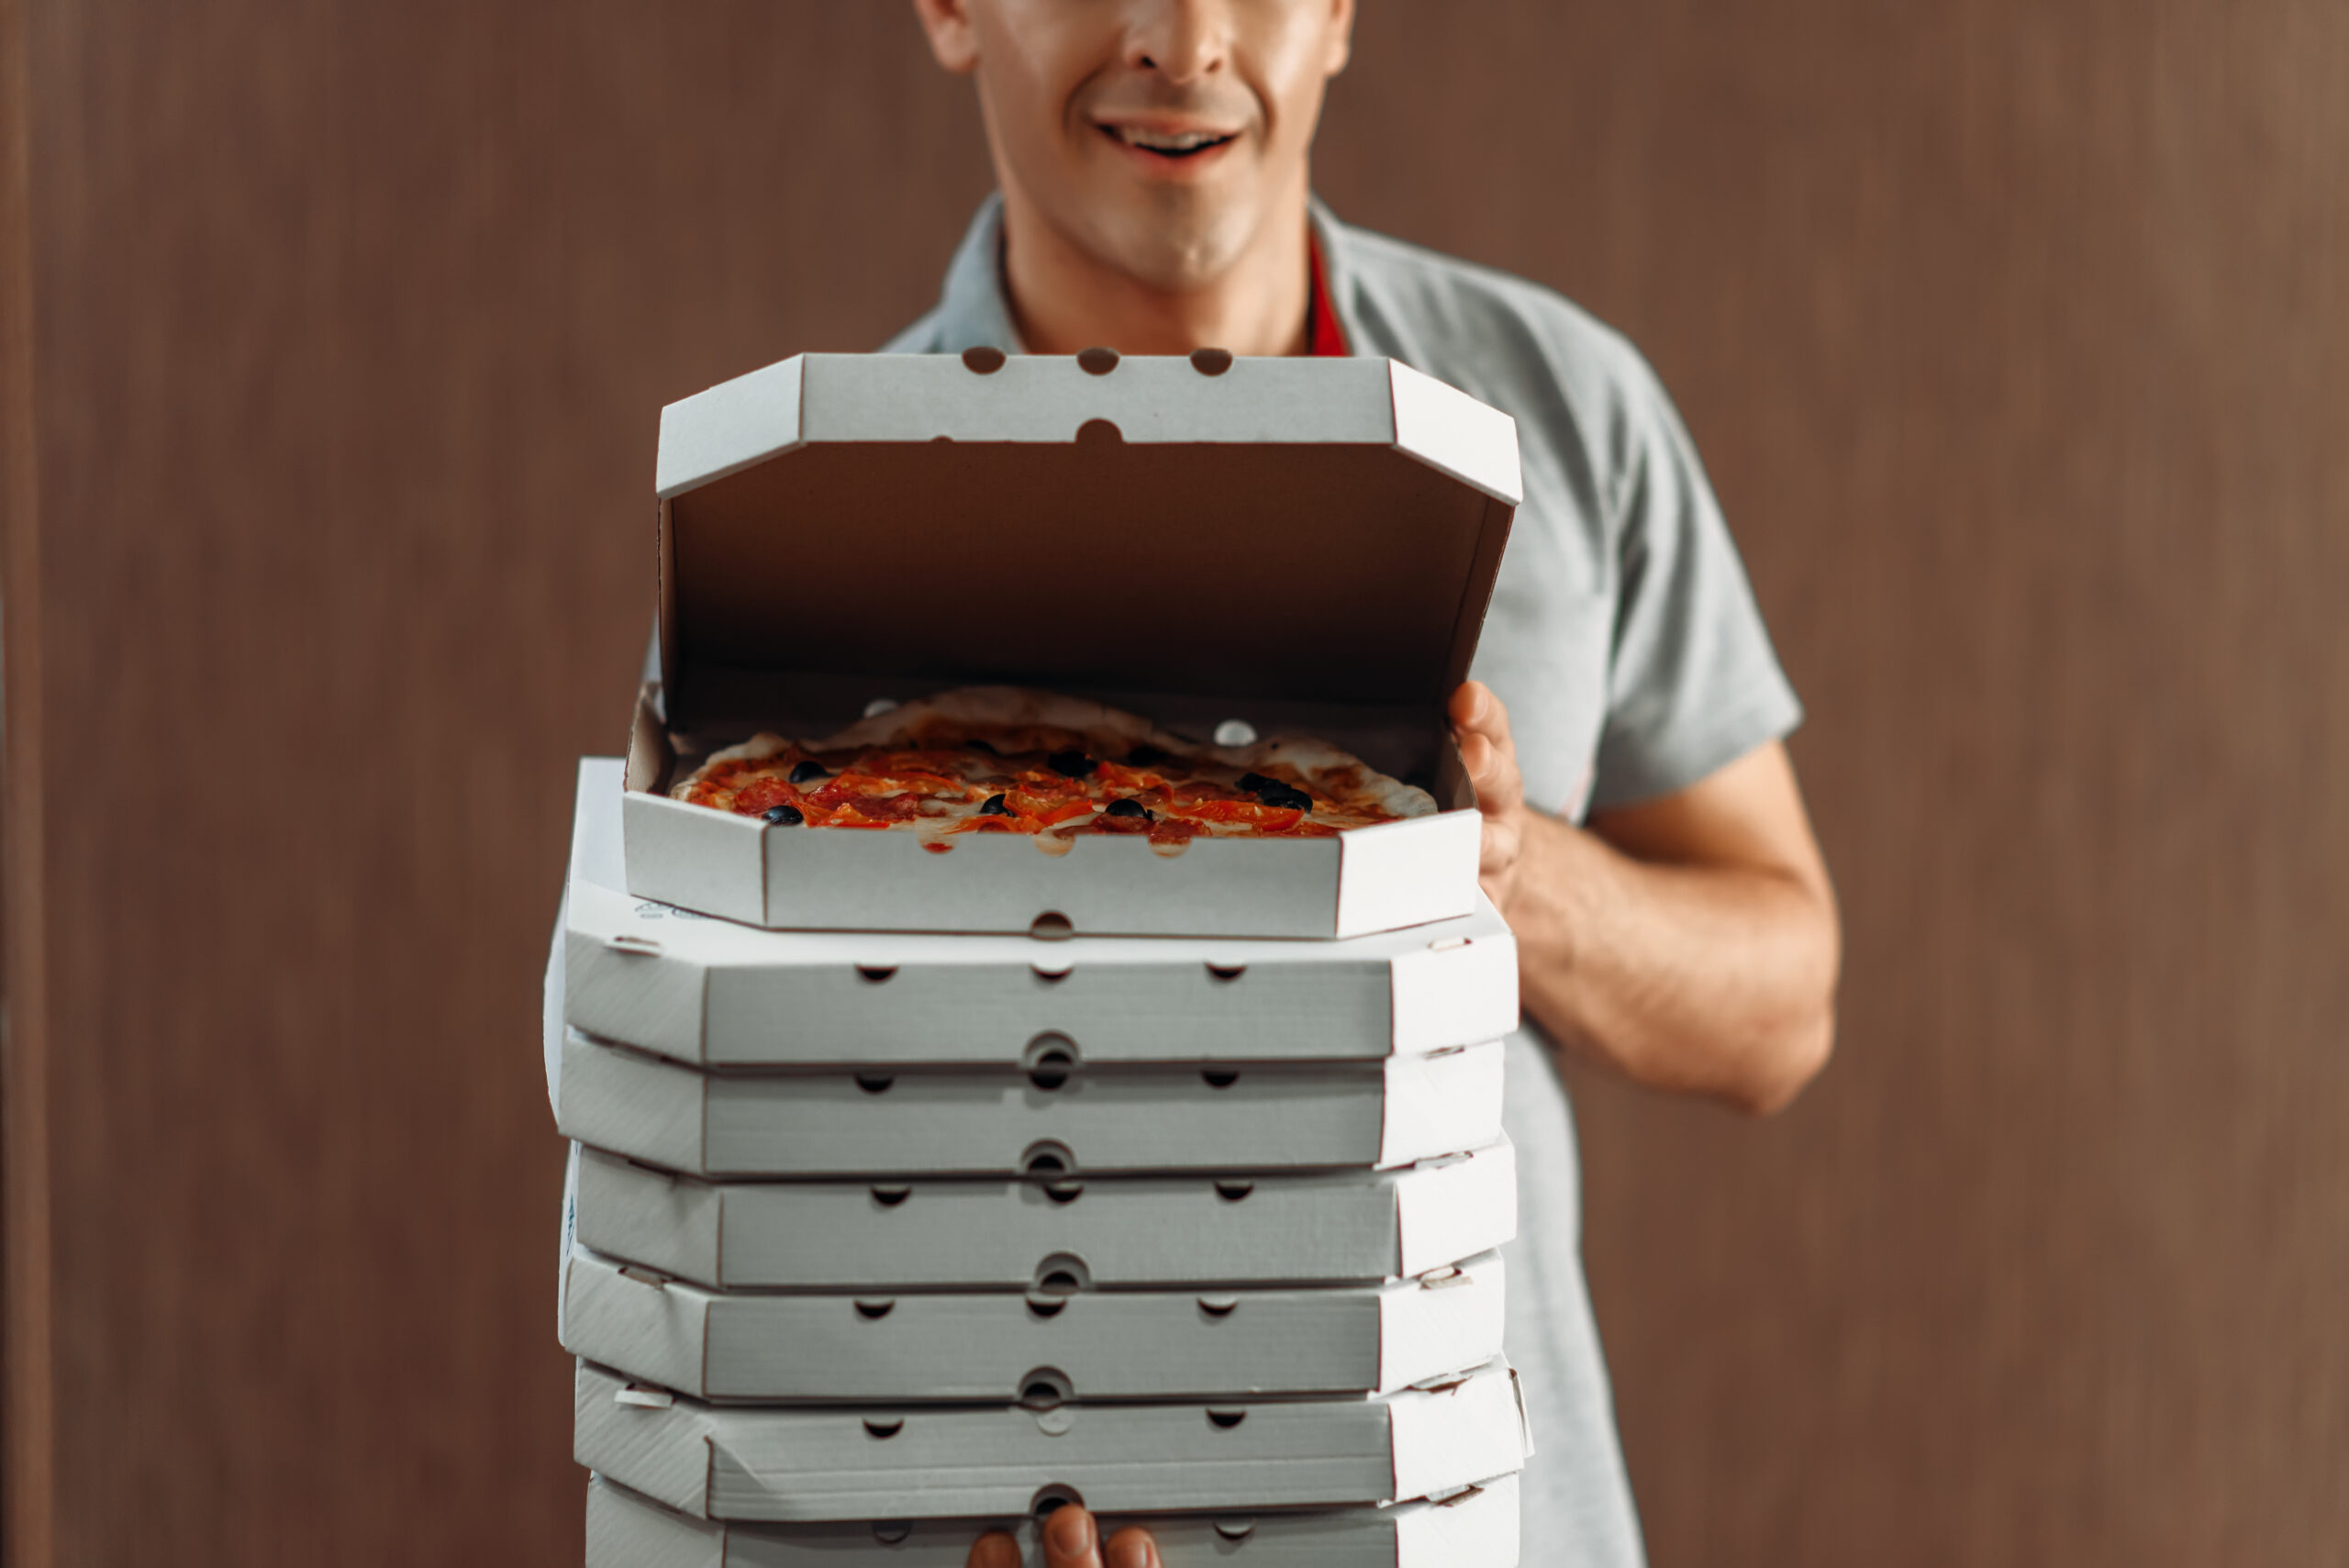 Ein Pizzabote hält mehrere Schachteln Pizza in den Händen. Die oberste Schachtel ist geöffnet und zeigt eine frische Pizza.